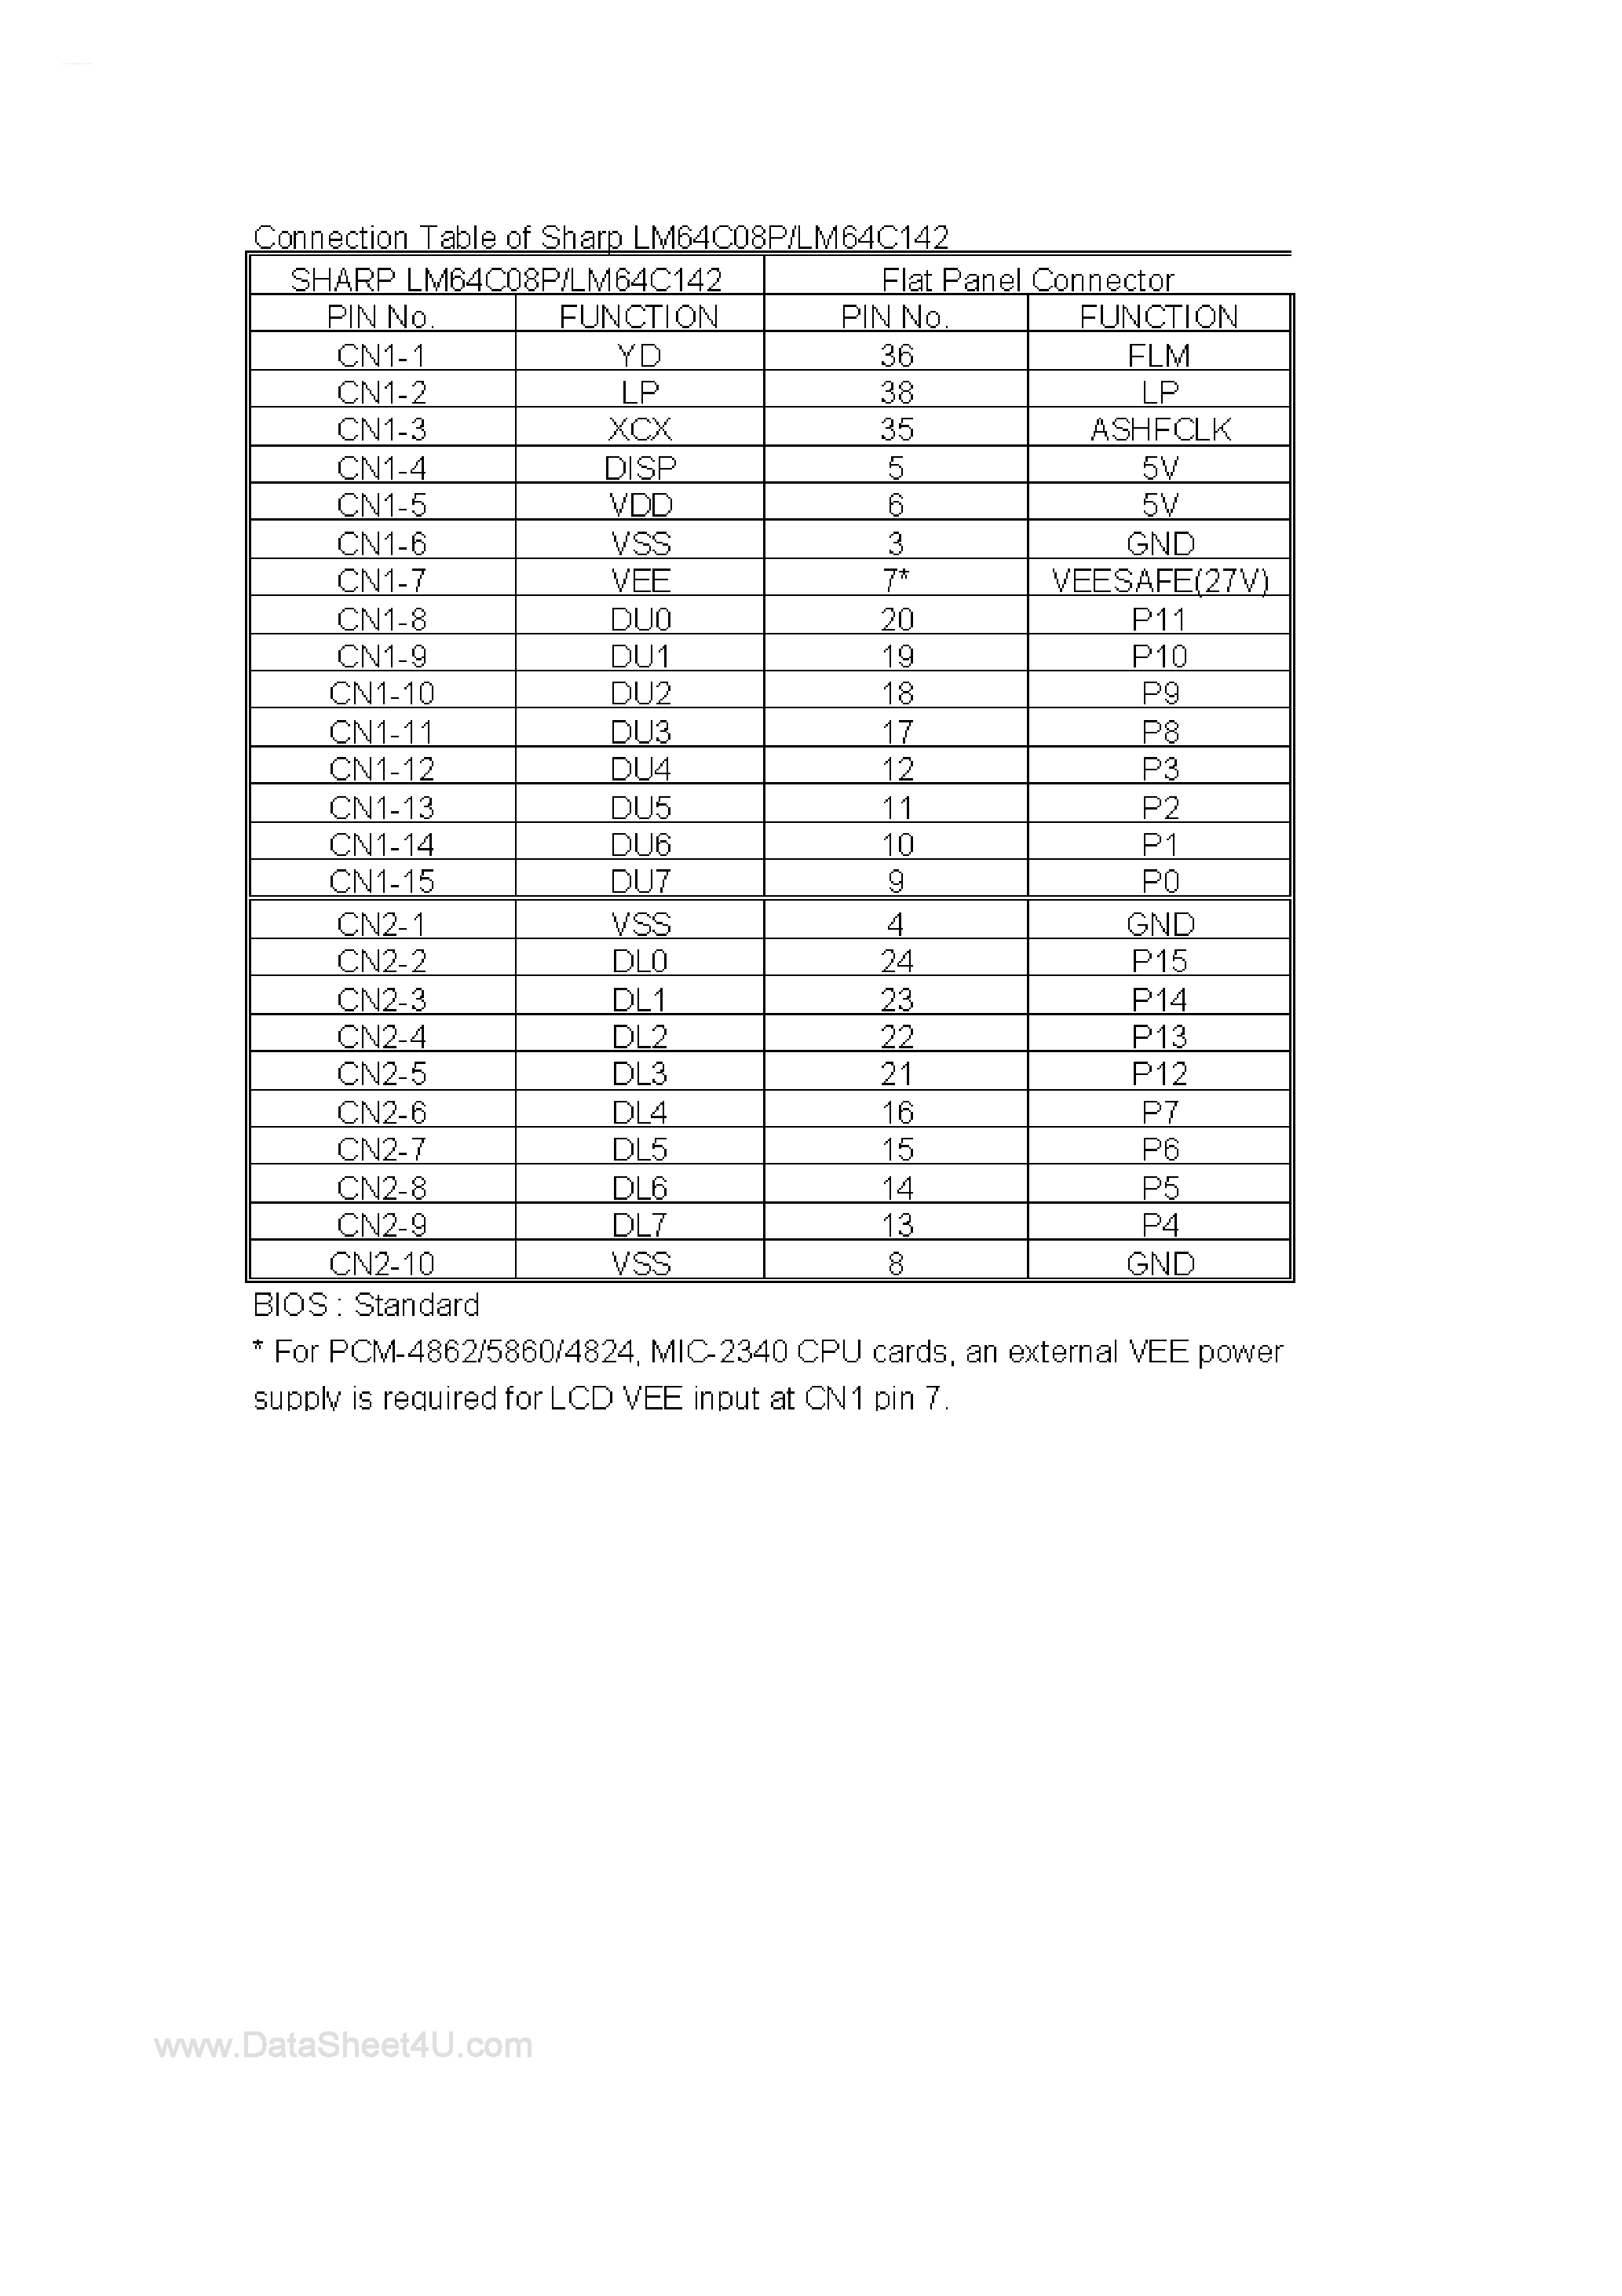 Даташит LM64C08P-(LM64C08P / LM64C142) Connection Table страница 1